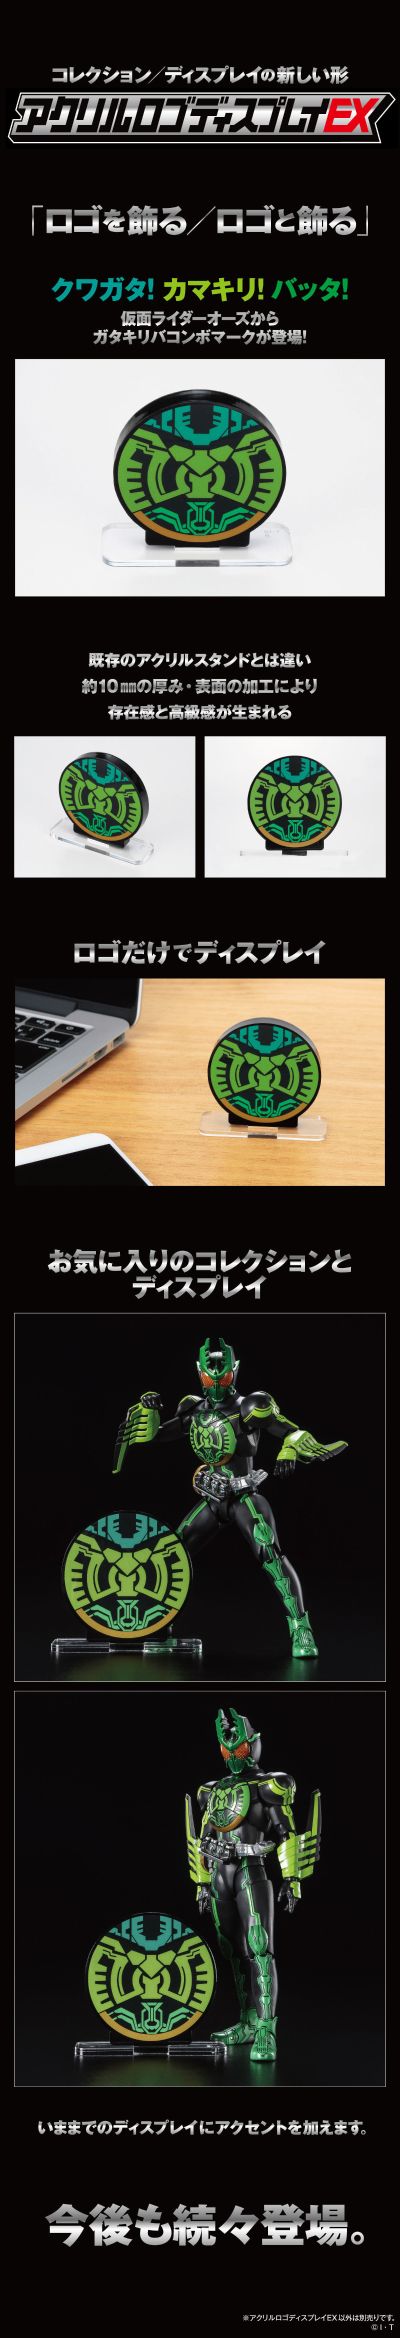 亚克力Logo摆件 EX 假面骑士欧兹 锹螳蝗联组/虫系联组 标识